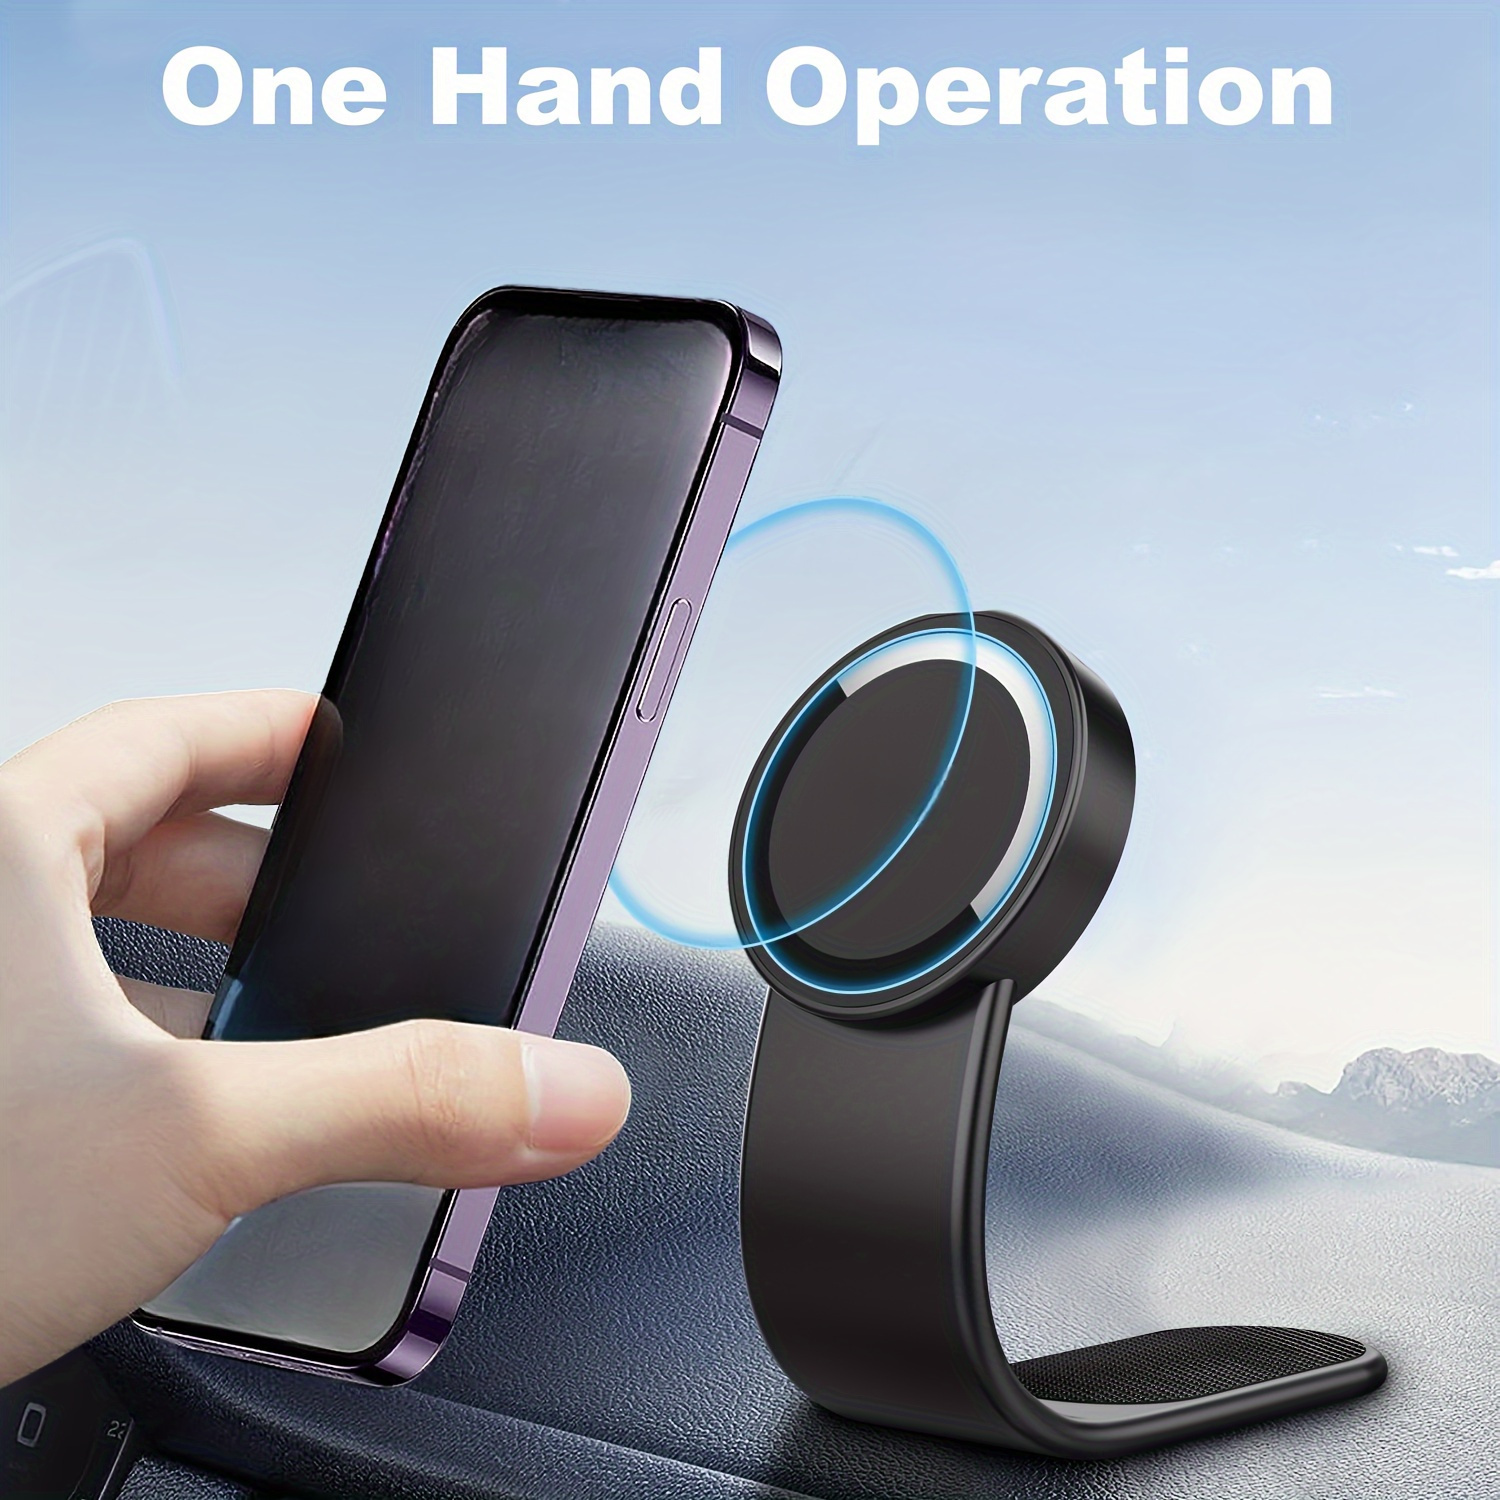 

Car Mobile Phone Holder, Magnetic Mobile Phone Holder, Hook-and- Phone Holder, Mobile Phone Navigation Holder, Flexible Plastic Bracket